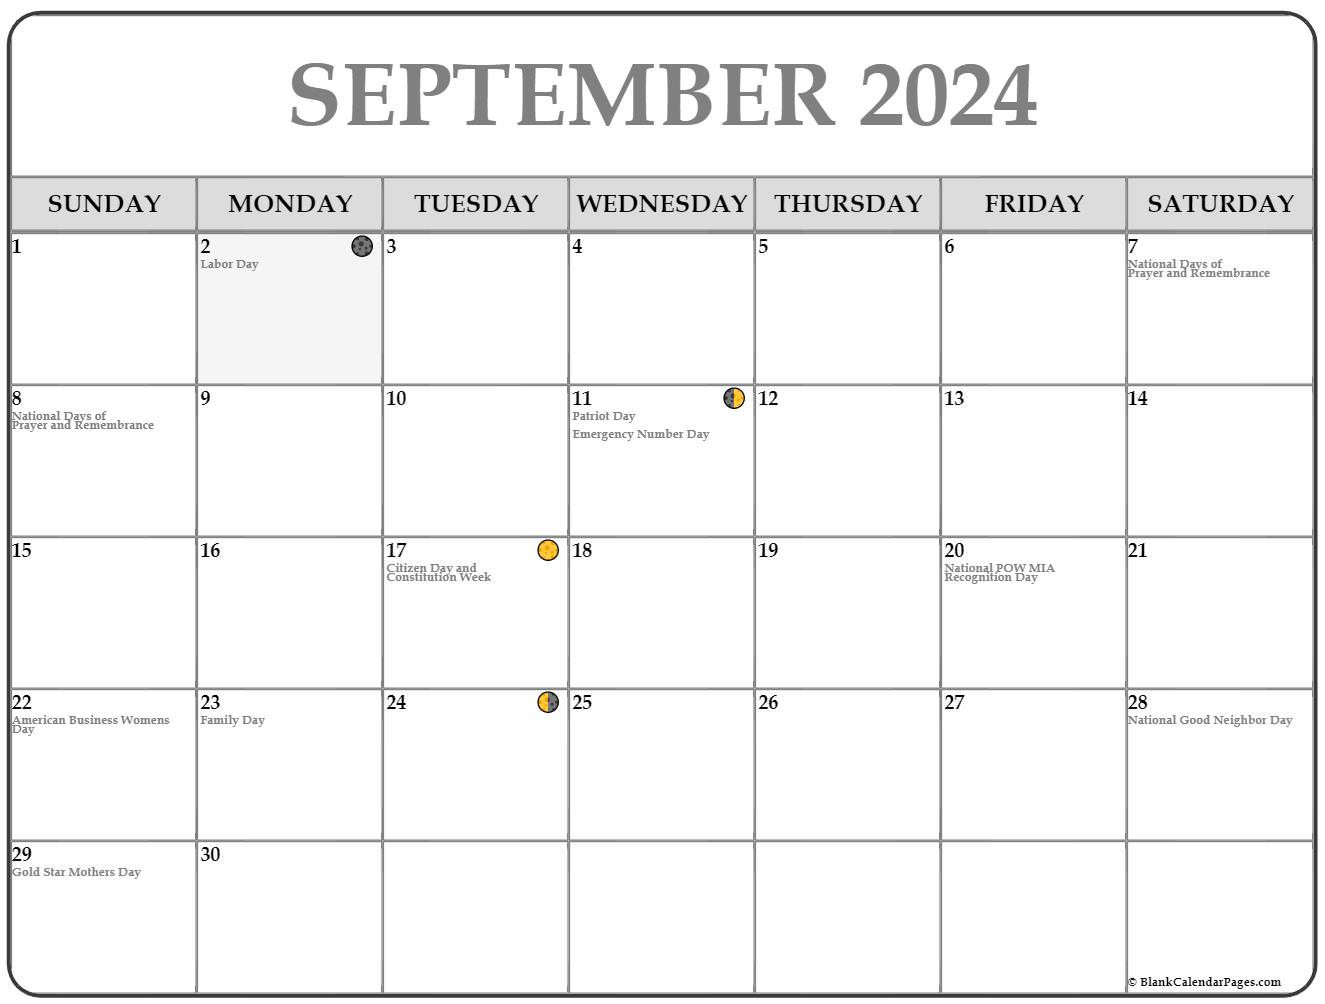 Moon Phase Calendar September 2022 September 2022 Lunar Calendar | Moon Phase Calendar